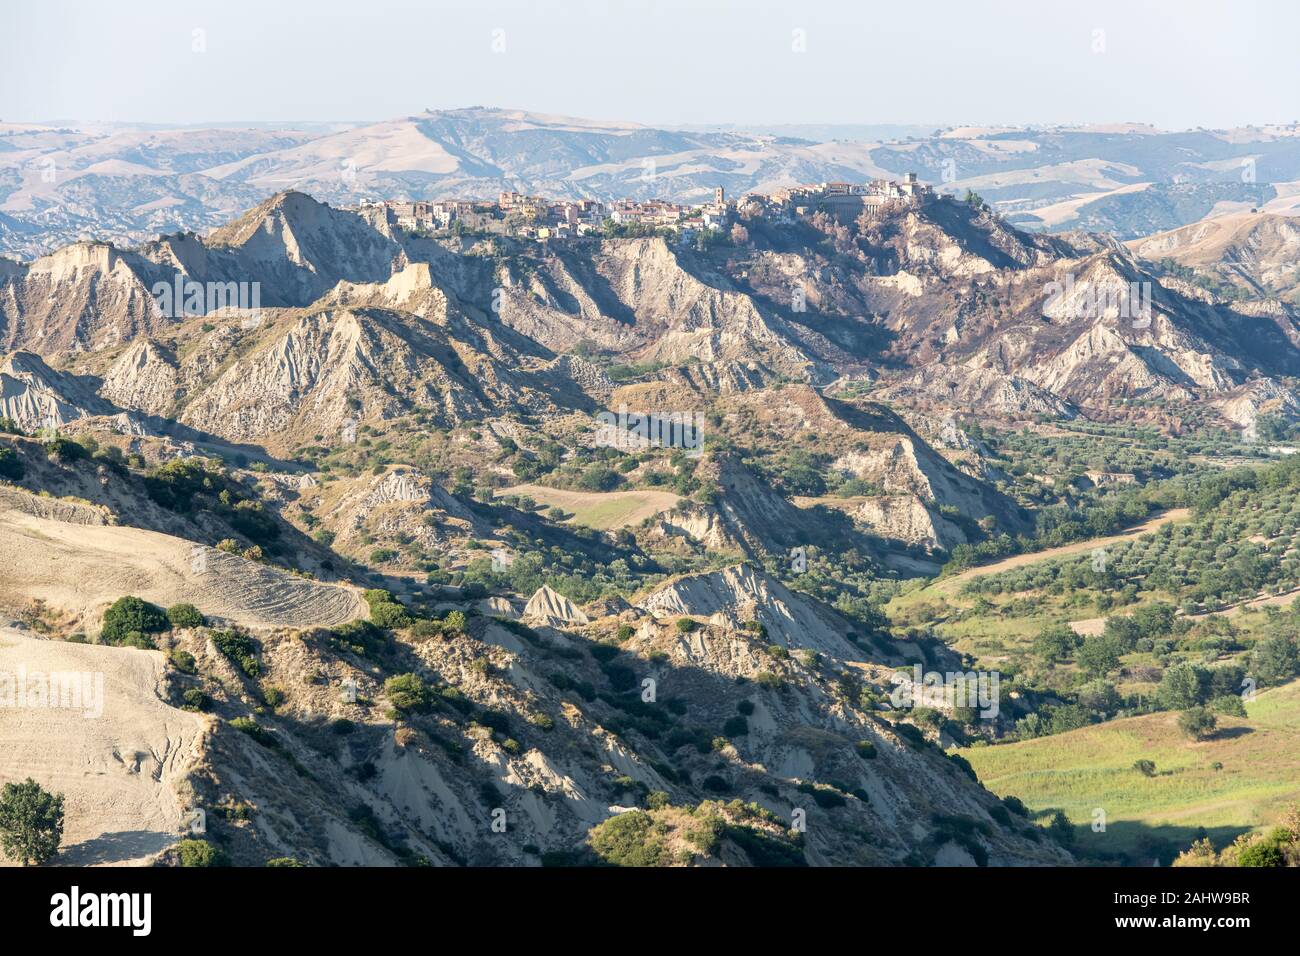 Paysage du sud de l'Apennin avec village en haut d'un grand ravin, tourné dans des conditions de lumière d'été à S. Arcangelo, Potenza, Basilicate, Italie Banque D'Images